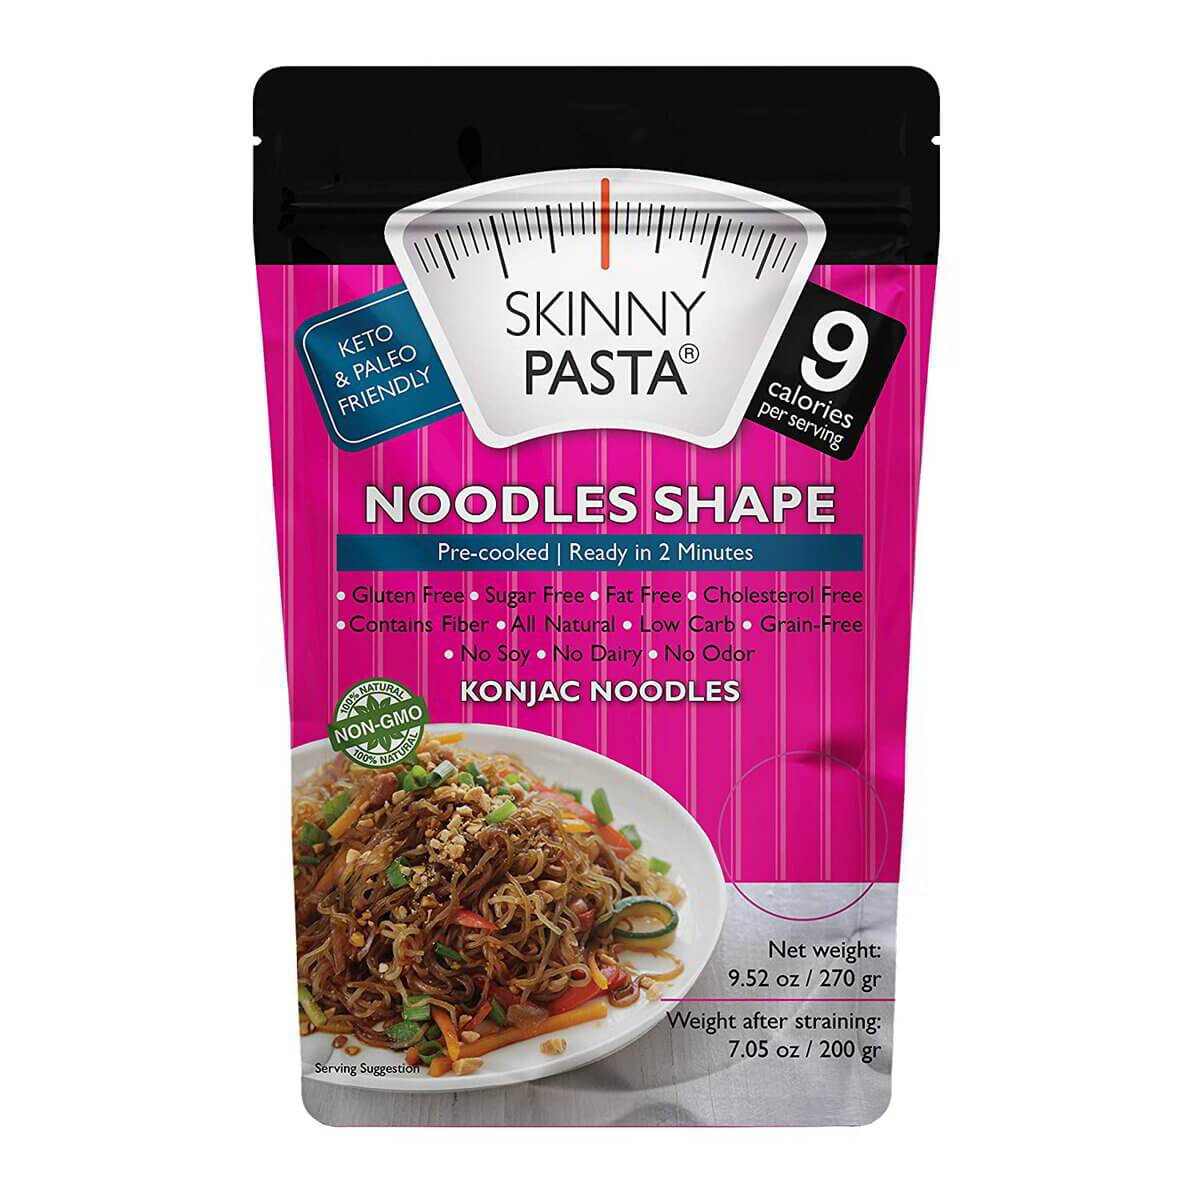 Skinny Pasta Noodles Shape